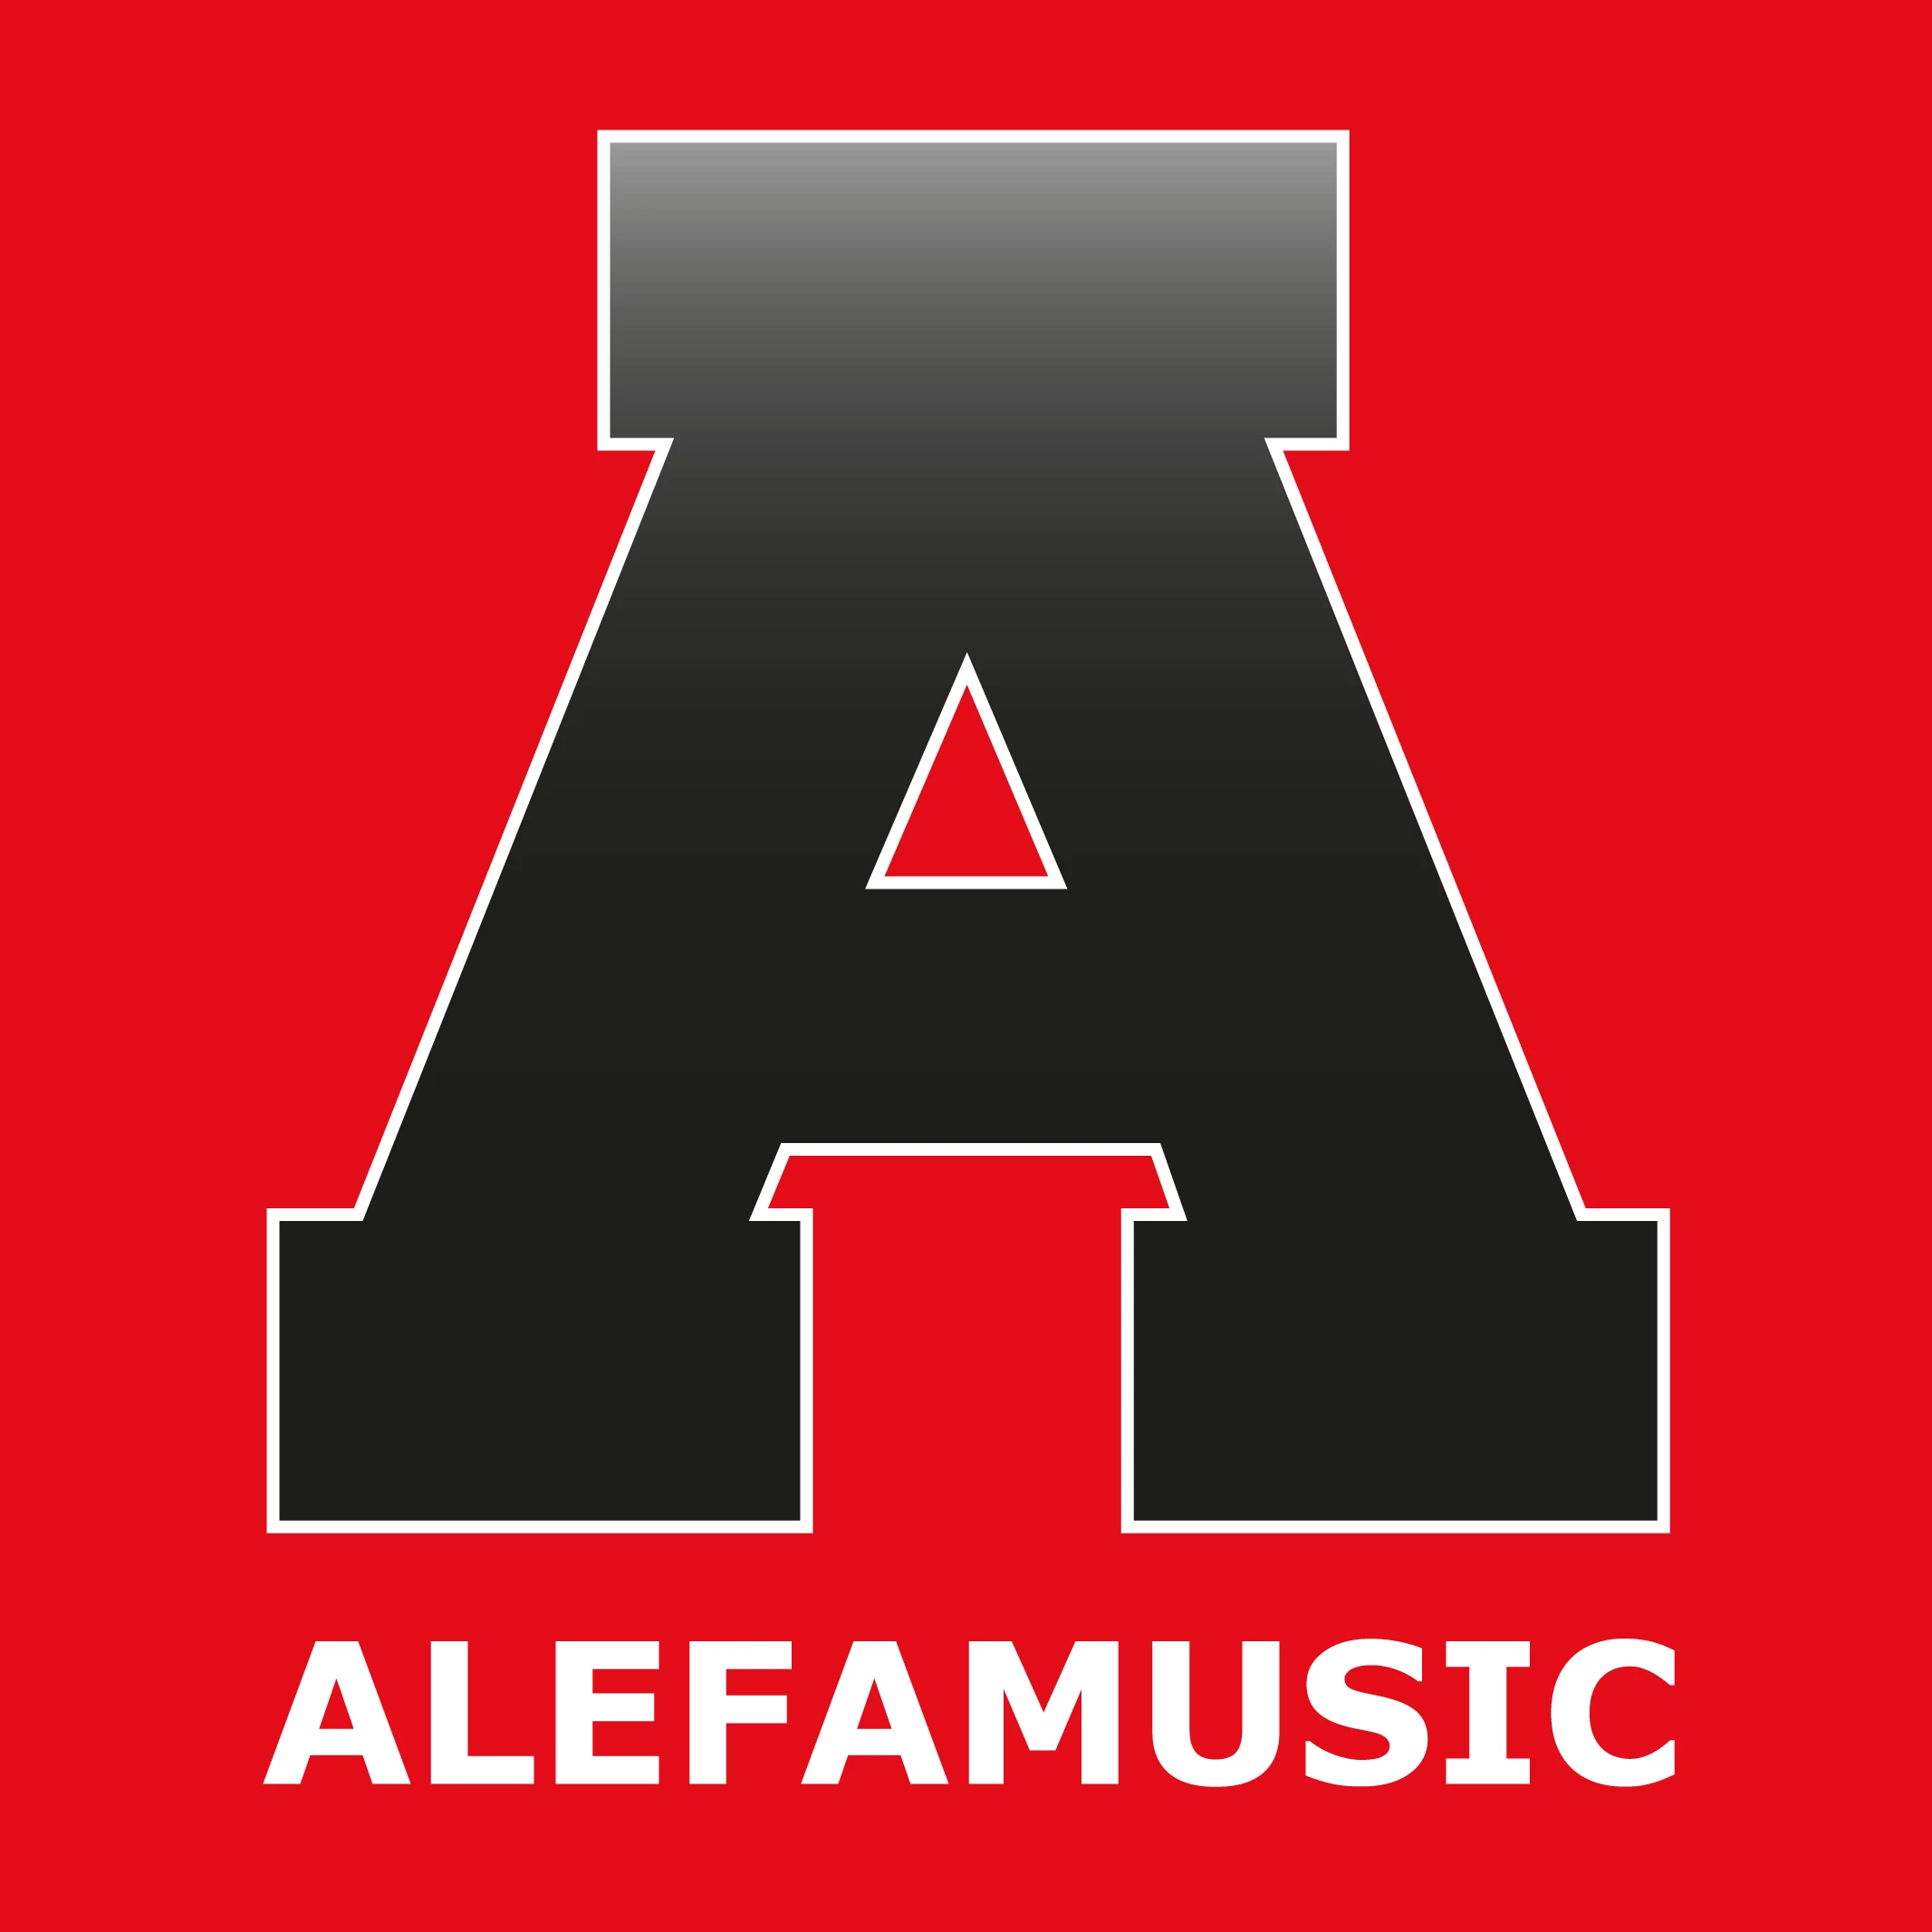 alefamusic